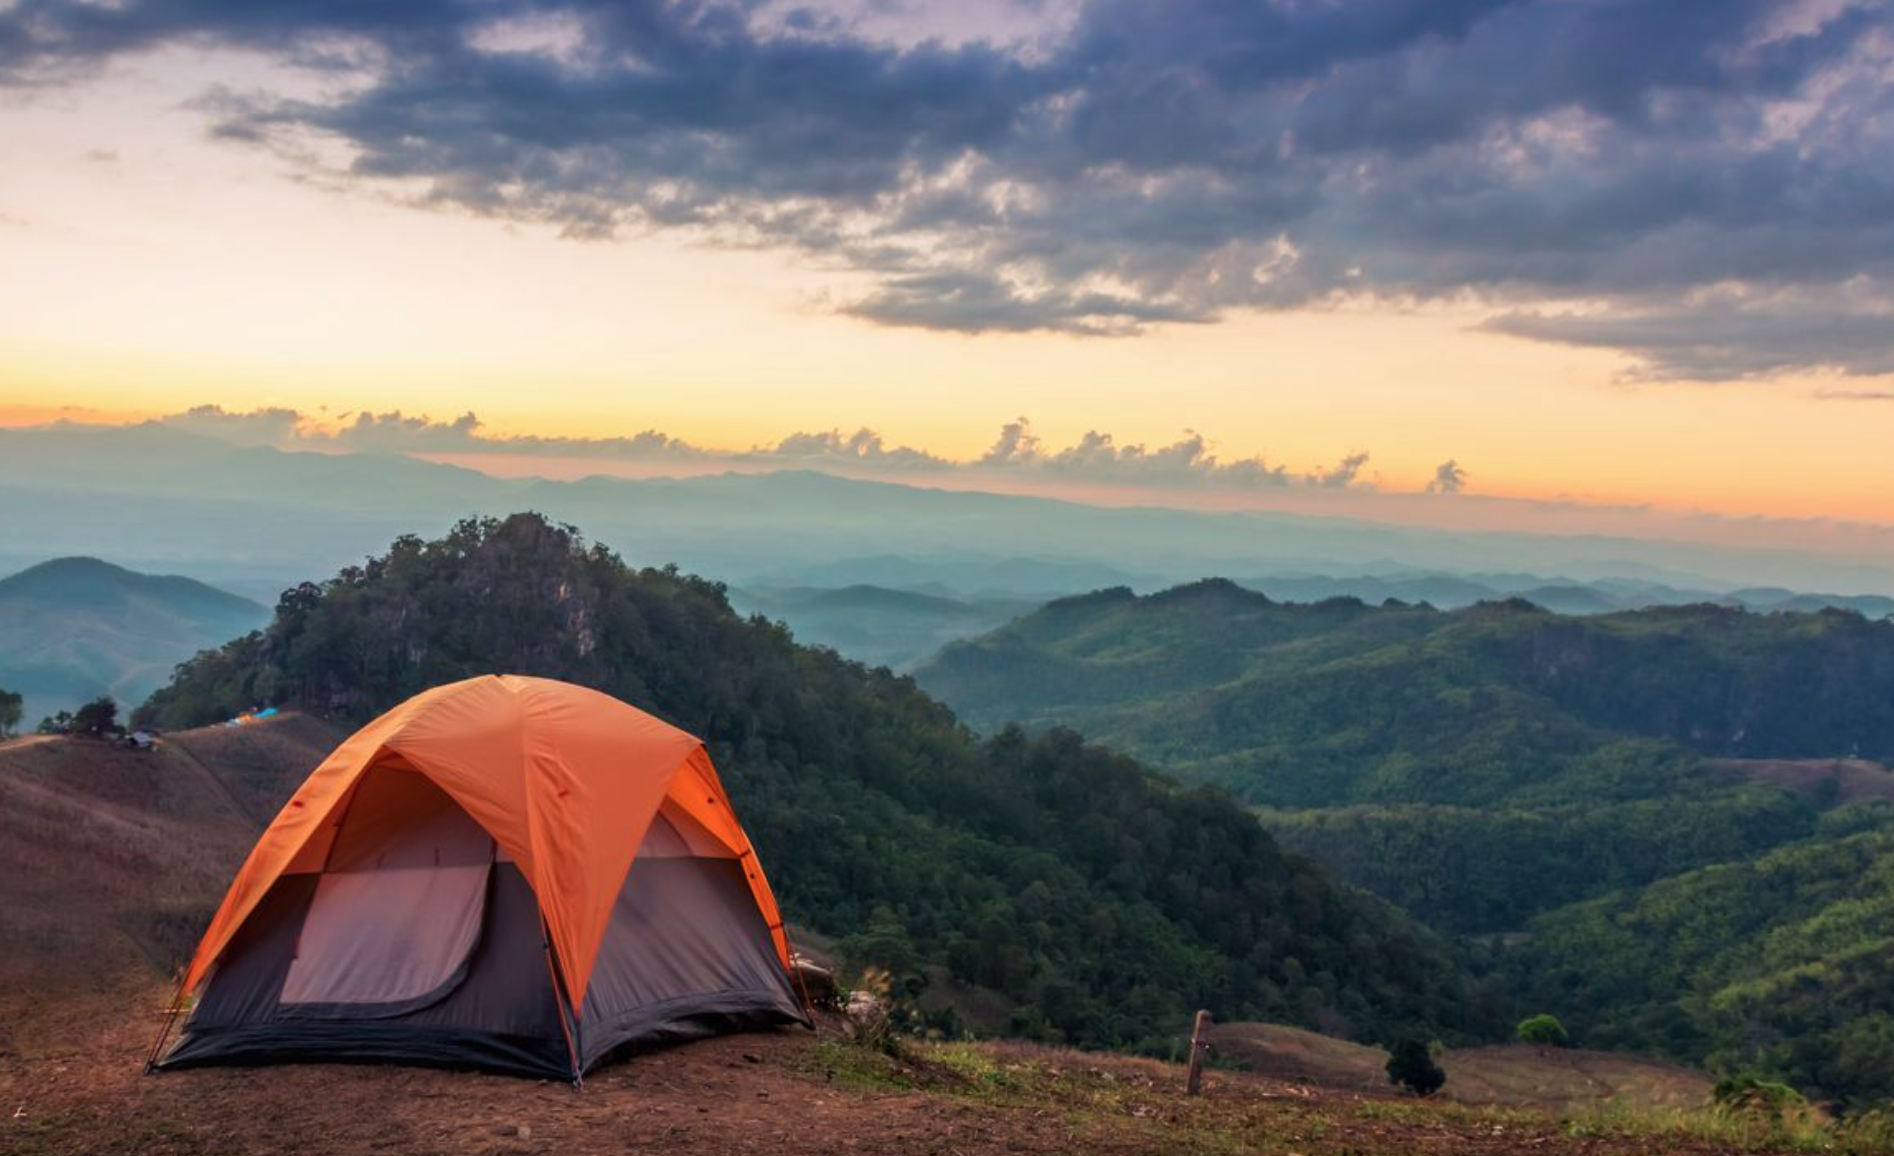 Палатка Camping Tent. Кемпинг West Camp. Палатка в горах. Красивый вид из палатки. When we go camping